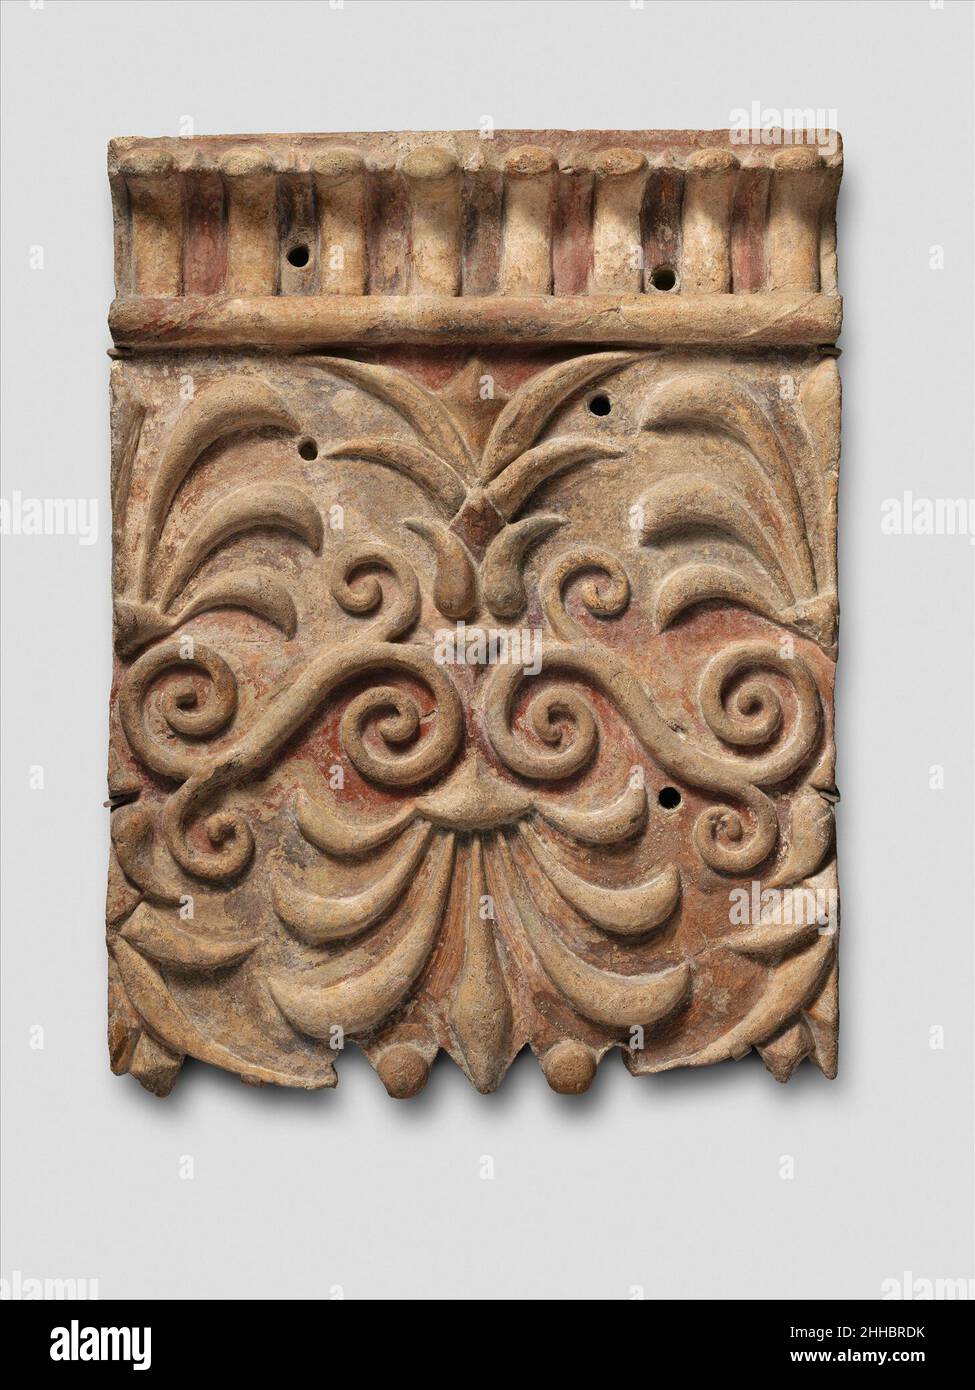 Terrakotta-Architekturtafel mit Lotus- und Palmettentwürfen Ende des 4th. Jahrhunderts v. Chr. Etrusker, die angeblich aus Cerveteristammen.die meisten Etrusker-Tempel wurden in großen Teilen aus Holz gefertigt, das im alten Italien reichlich vorhanden ist. Um die Holzbalken vor den Elementen zu schützen, wurden sie mit Terrakotta-Platten unterschiedlicher Größe bedeckt. Diese formgefertigte Plakette wurde ursprünglich an einem horizontalen Balken hoch auf der Außenseite eines etruskischen Tempels angebracht. Es war eine Serie, die einen langen dekorativen Fries für den Architrav geschaffen hätte, das horizontale Element direkt über den Säulen. Spuren von Rot, Blau und Y Stockfoto